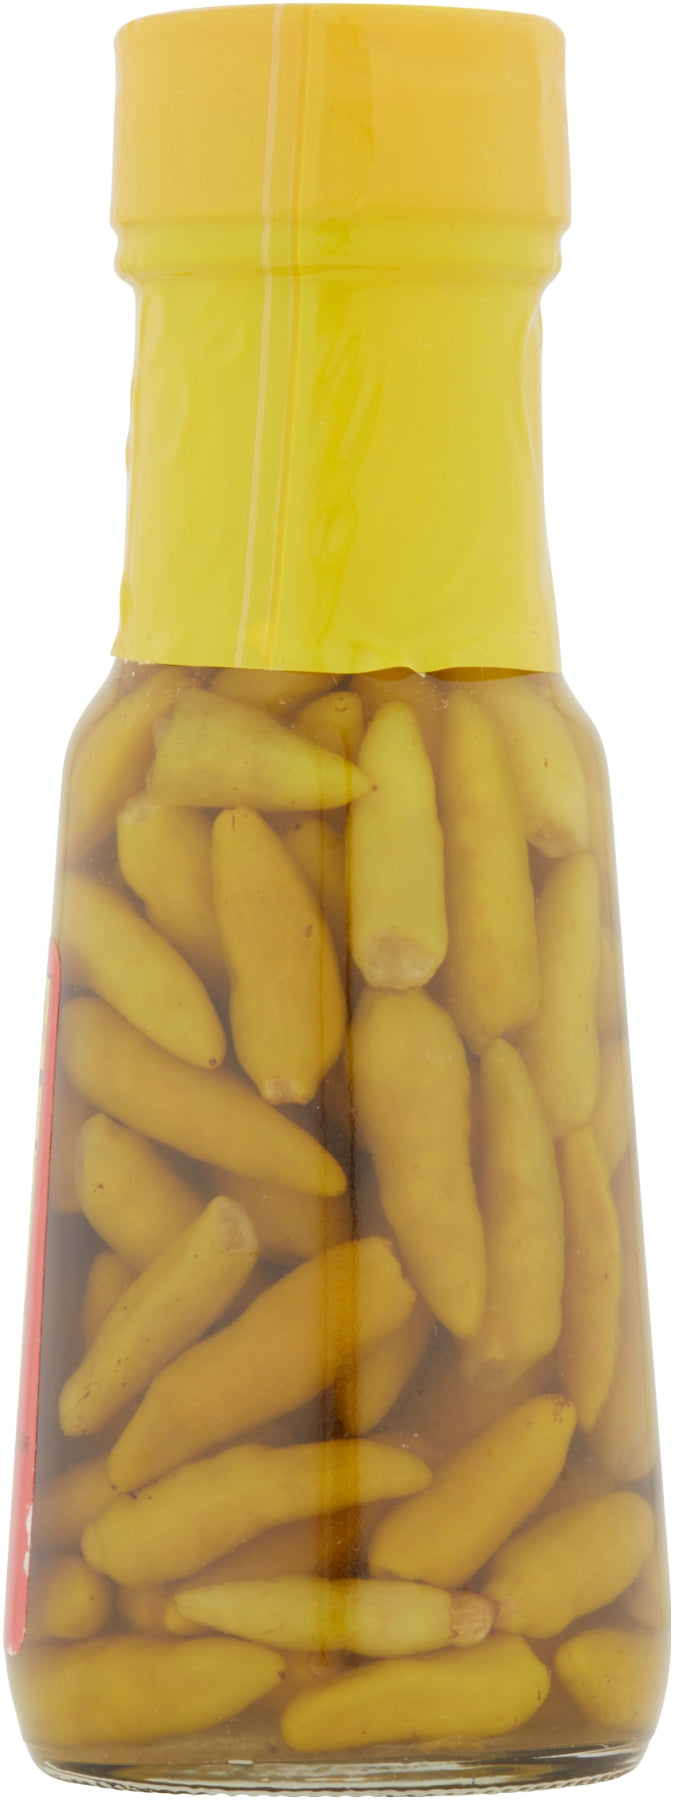 Louisiana Tabasco Peppers In Vinegar-6 fl oz.s-12/Case